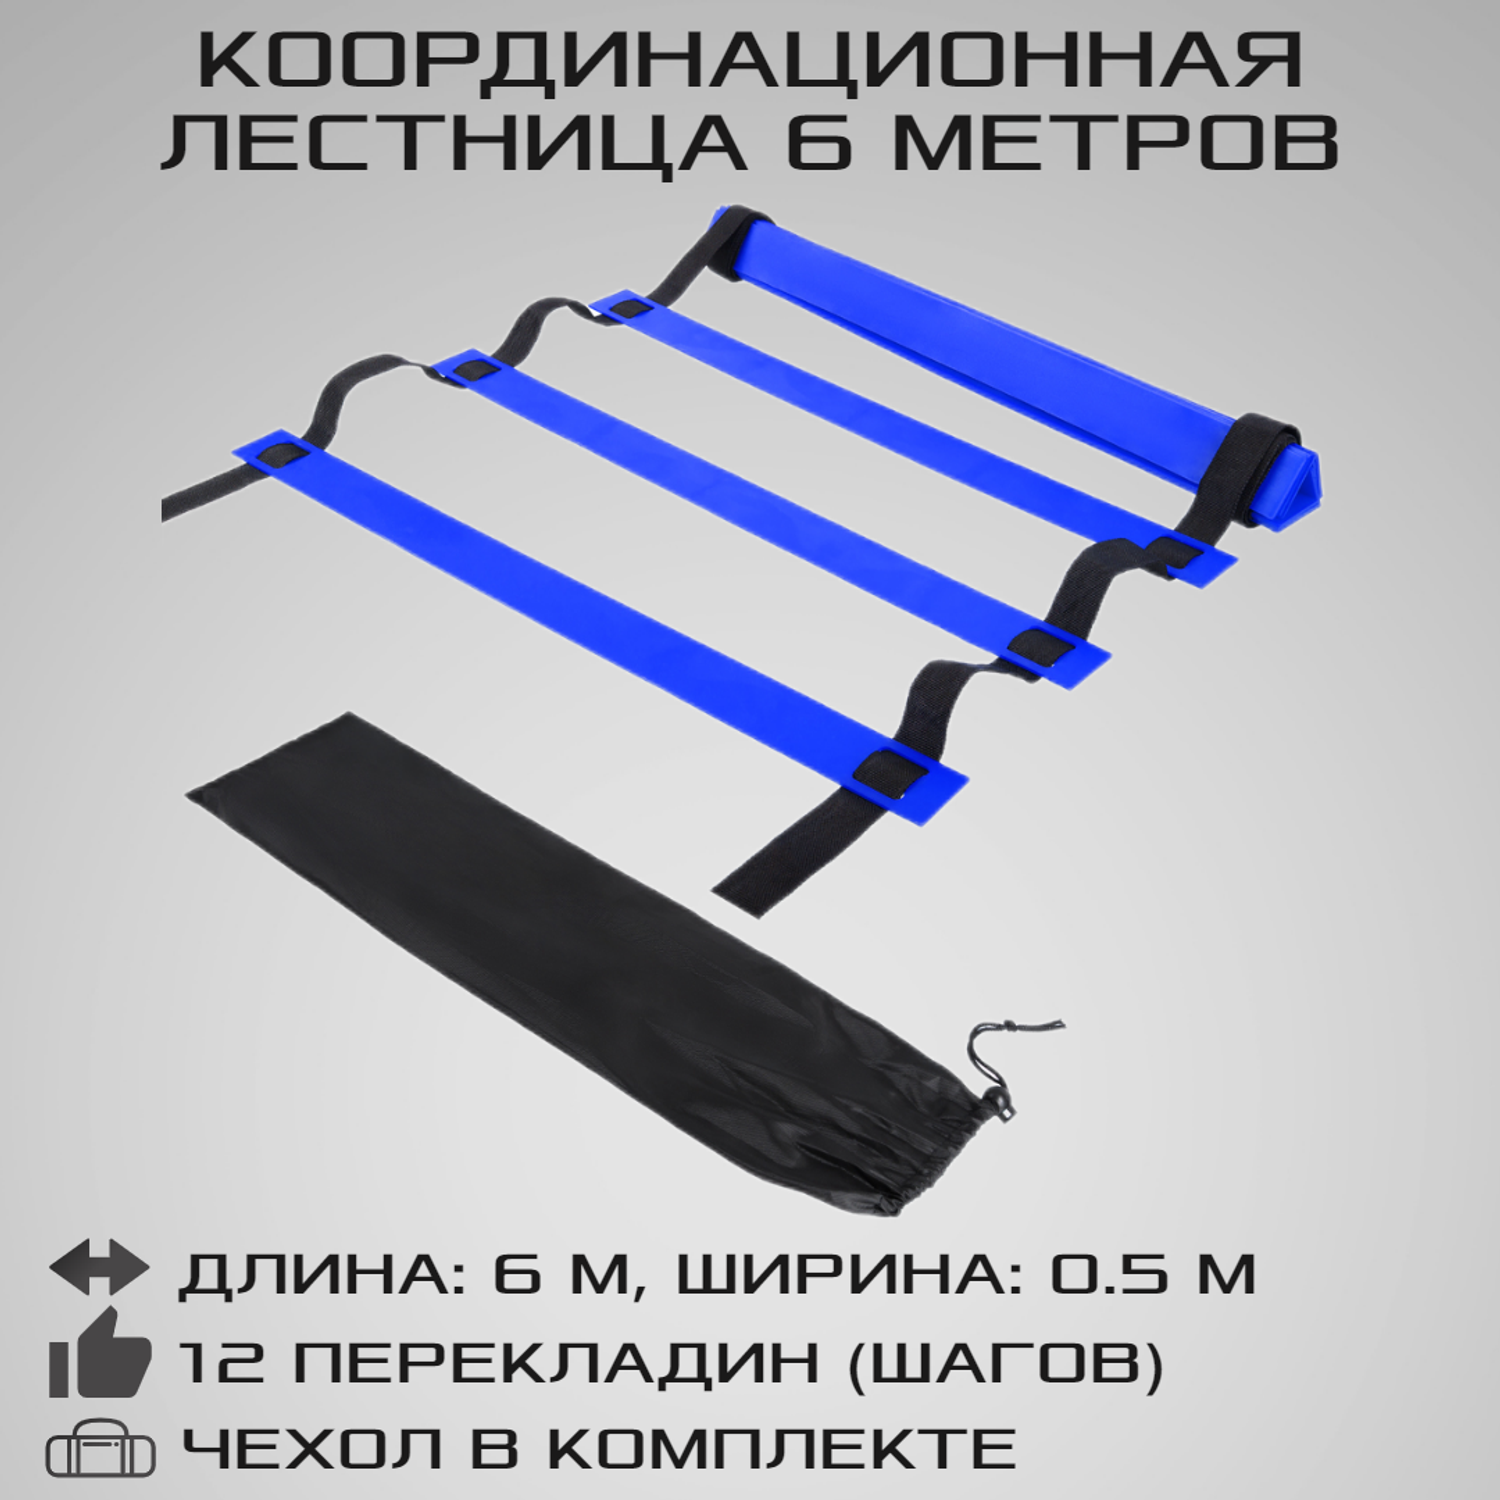 Координационная лестница STRONG BODY 6 метров 12 перекладин черно-синяя - фото 1